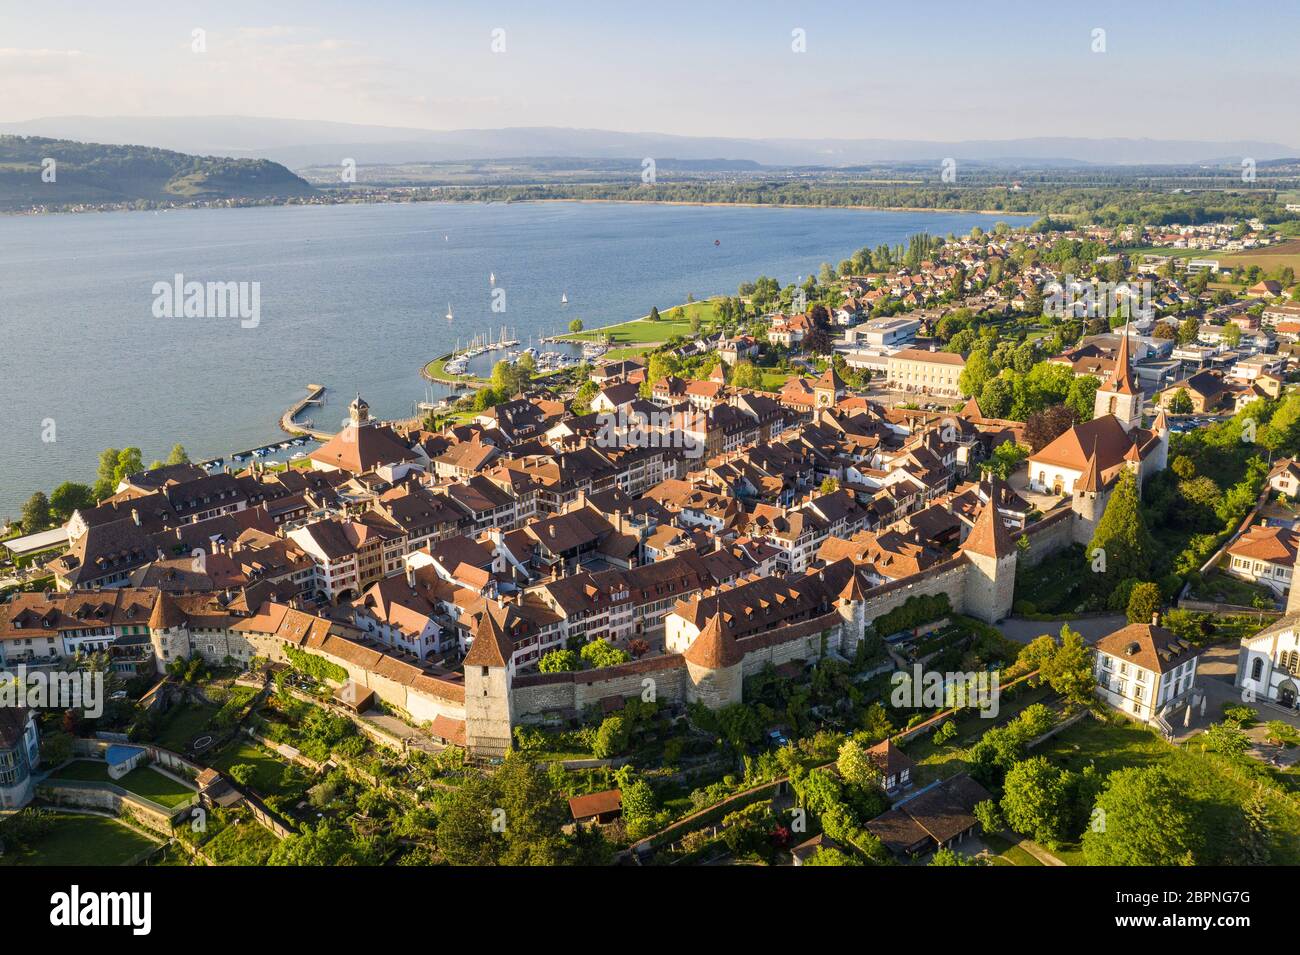 Vista aerea del famoso Morat medievale, o Murten in tedesco, città vecchia sul lago Morat nel cantone Friburgo in Svizzera Foto Stock